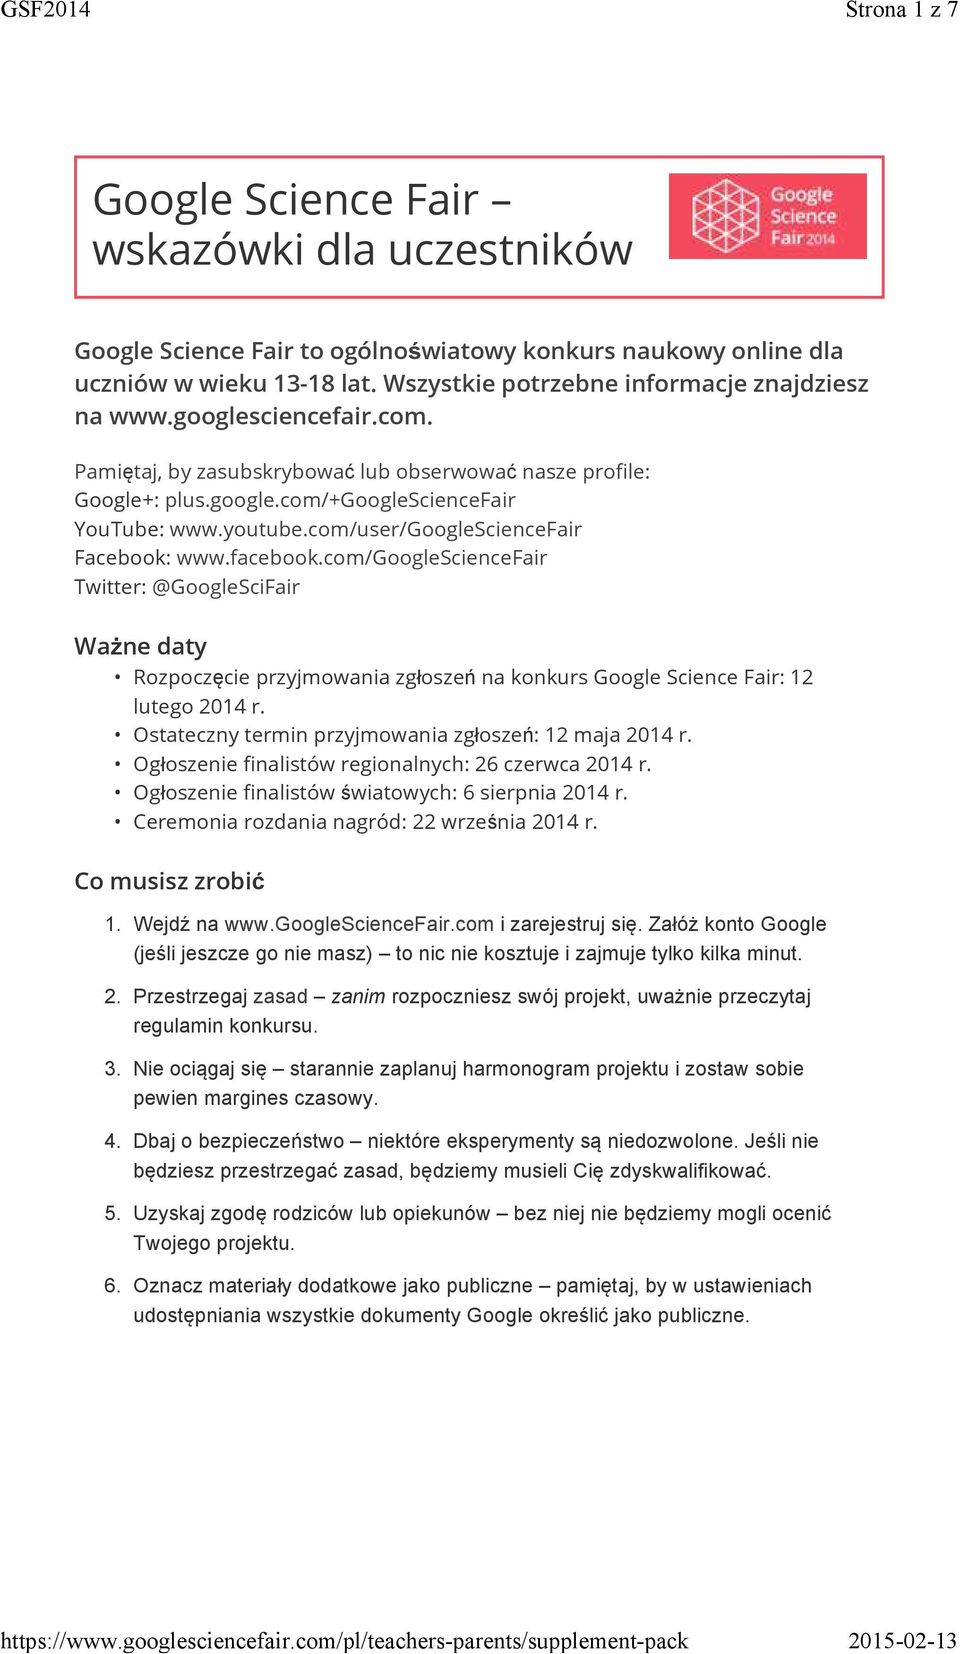 com/googlesciencefair Twitter: @GoogleSciFair Ważne daty Rozpoczęcie przyjmowania zgłoszeń na konkurs Google Science Fair: 12 lutego 2014 r. Ostateczny termin przyjmowania zgłoszeń: 12 maja 2014 r.